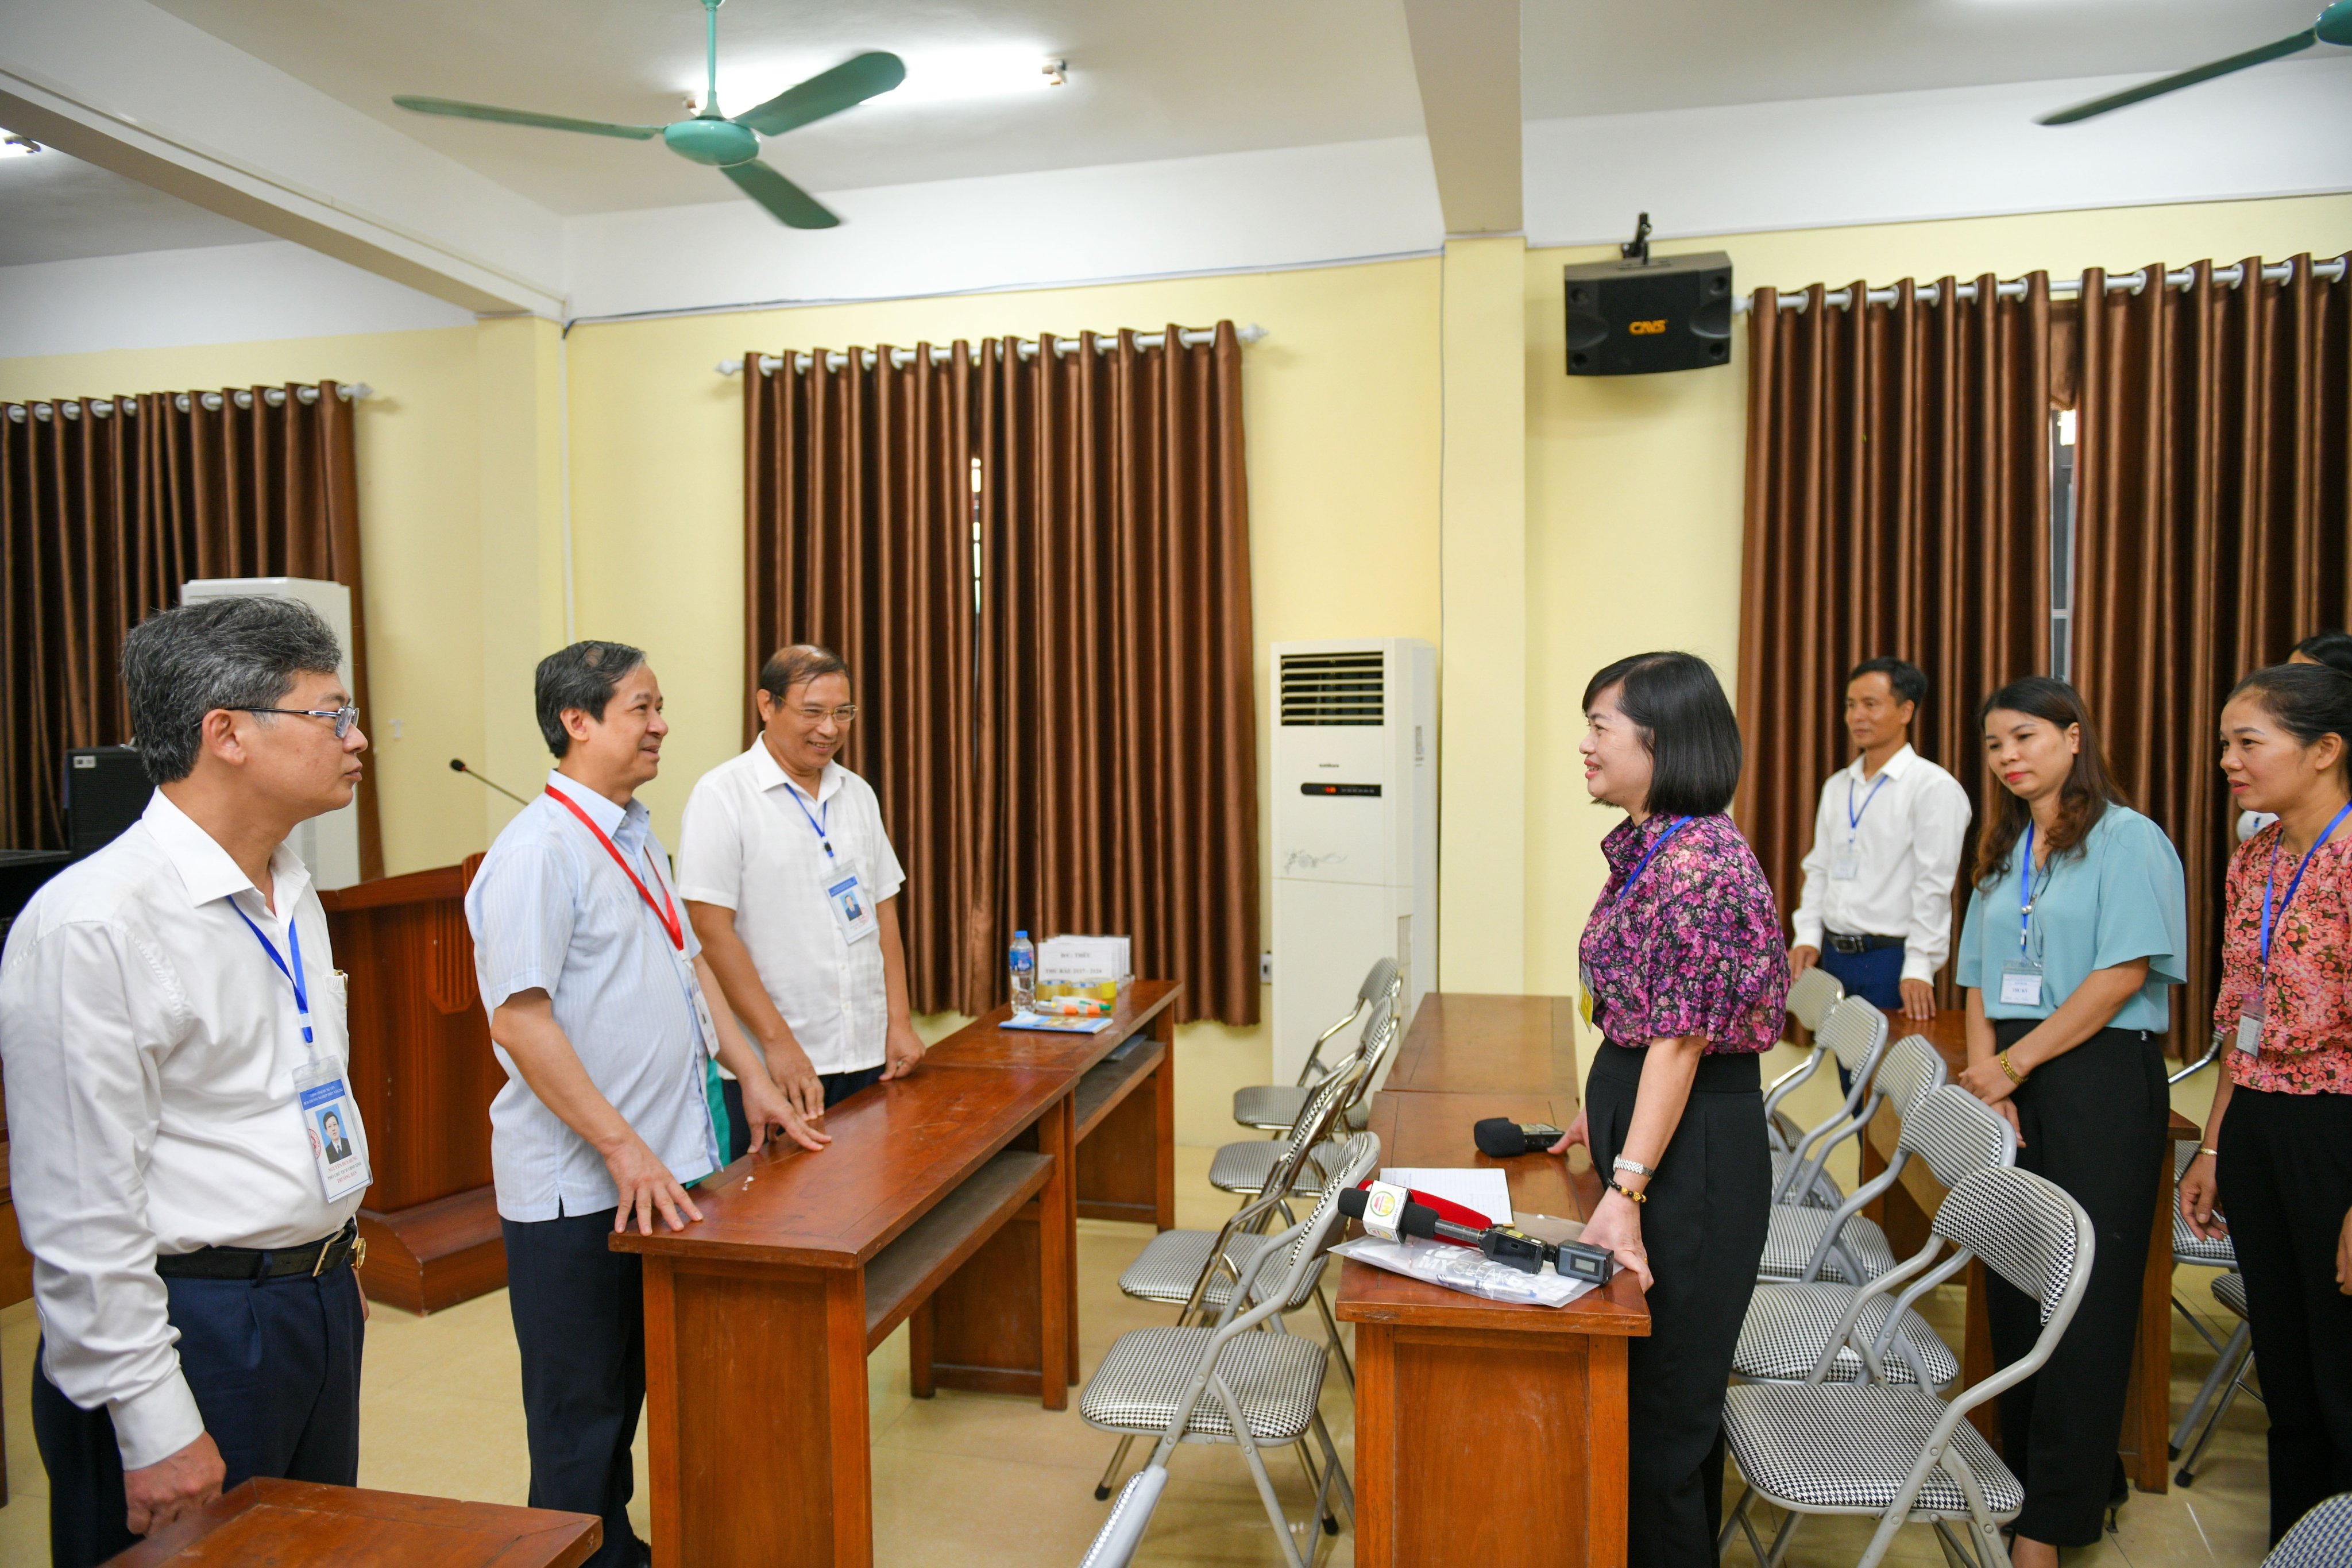 Bộ trưởng Nguyễn Kim Sơn trao đổi với cán bộ tham gia làm thi tại Điểm thi Trường THPT Yên Mỹ.